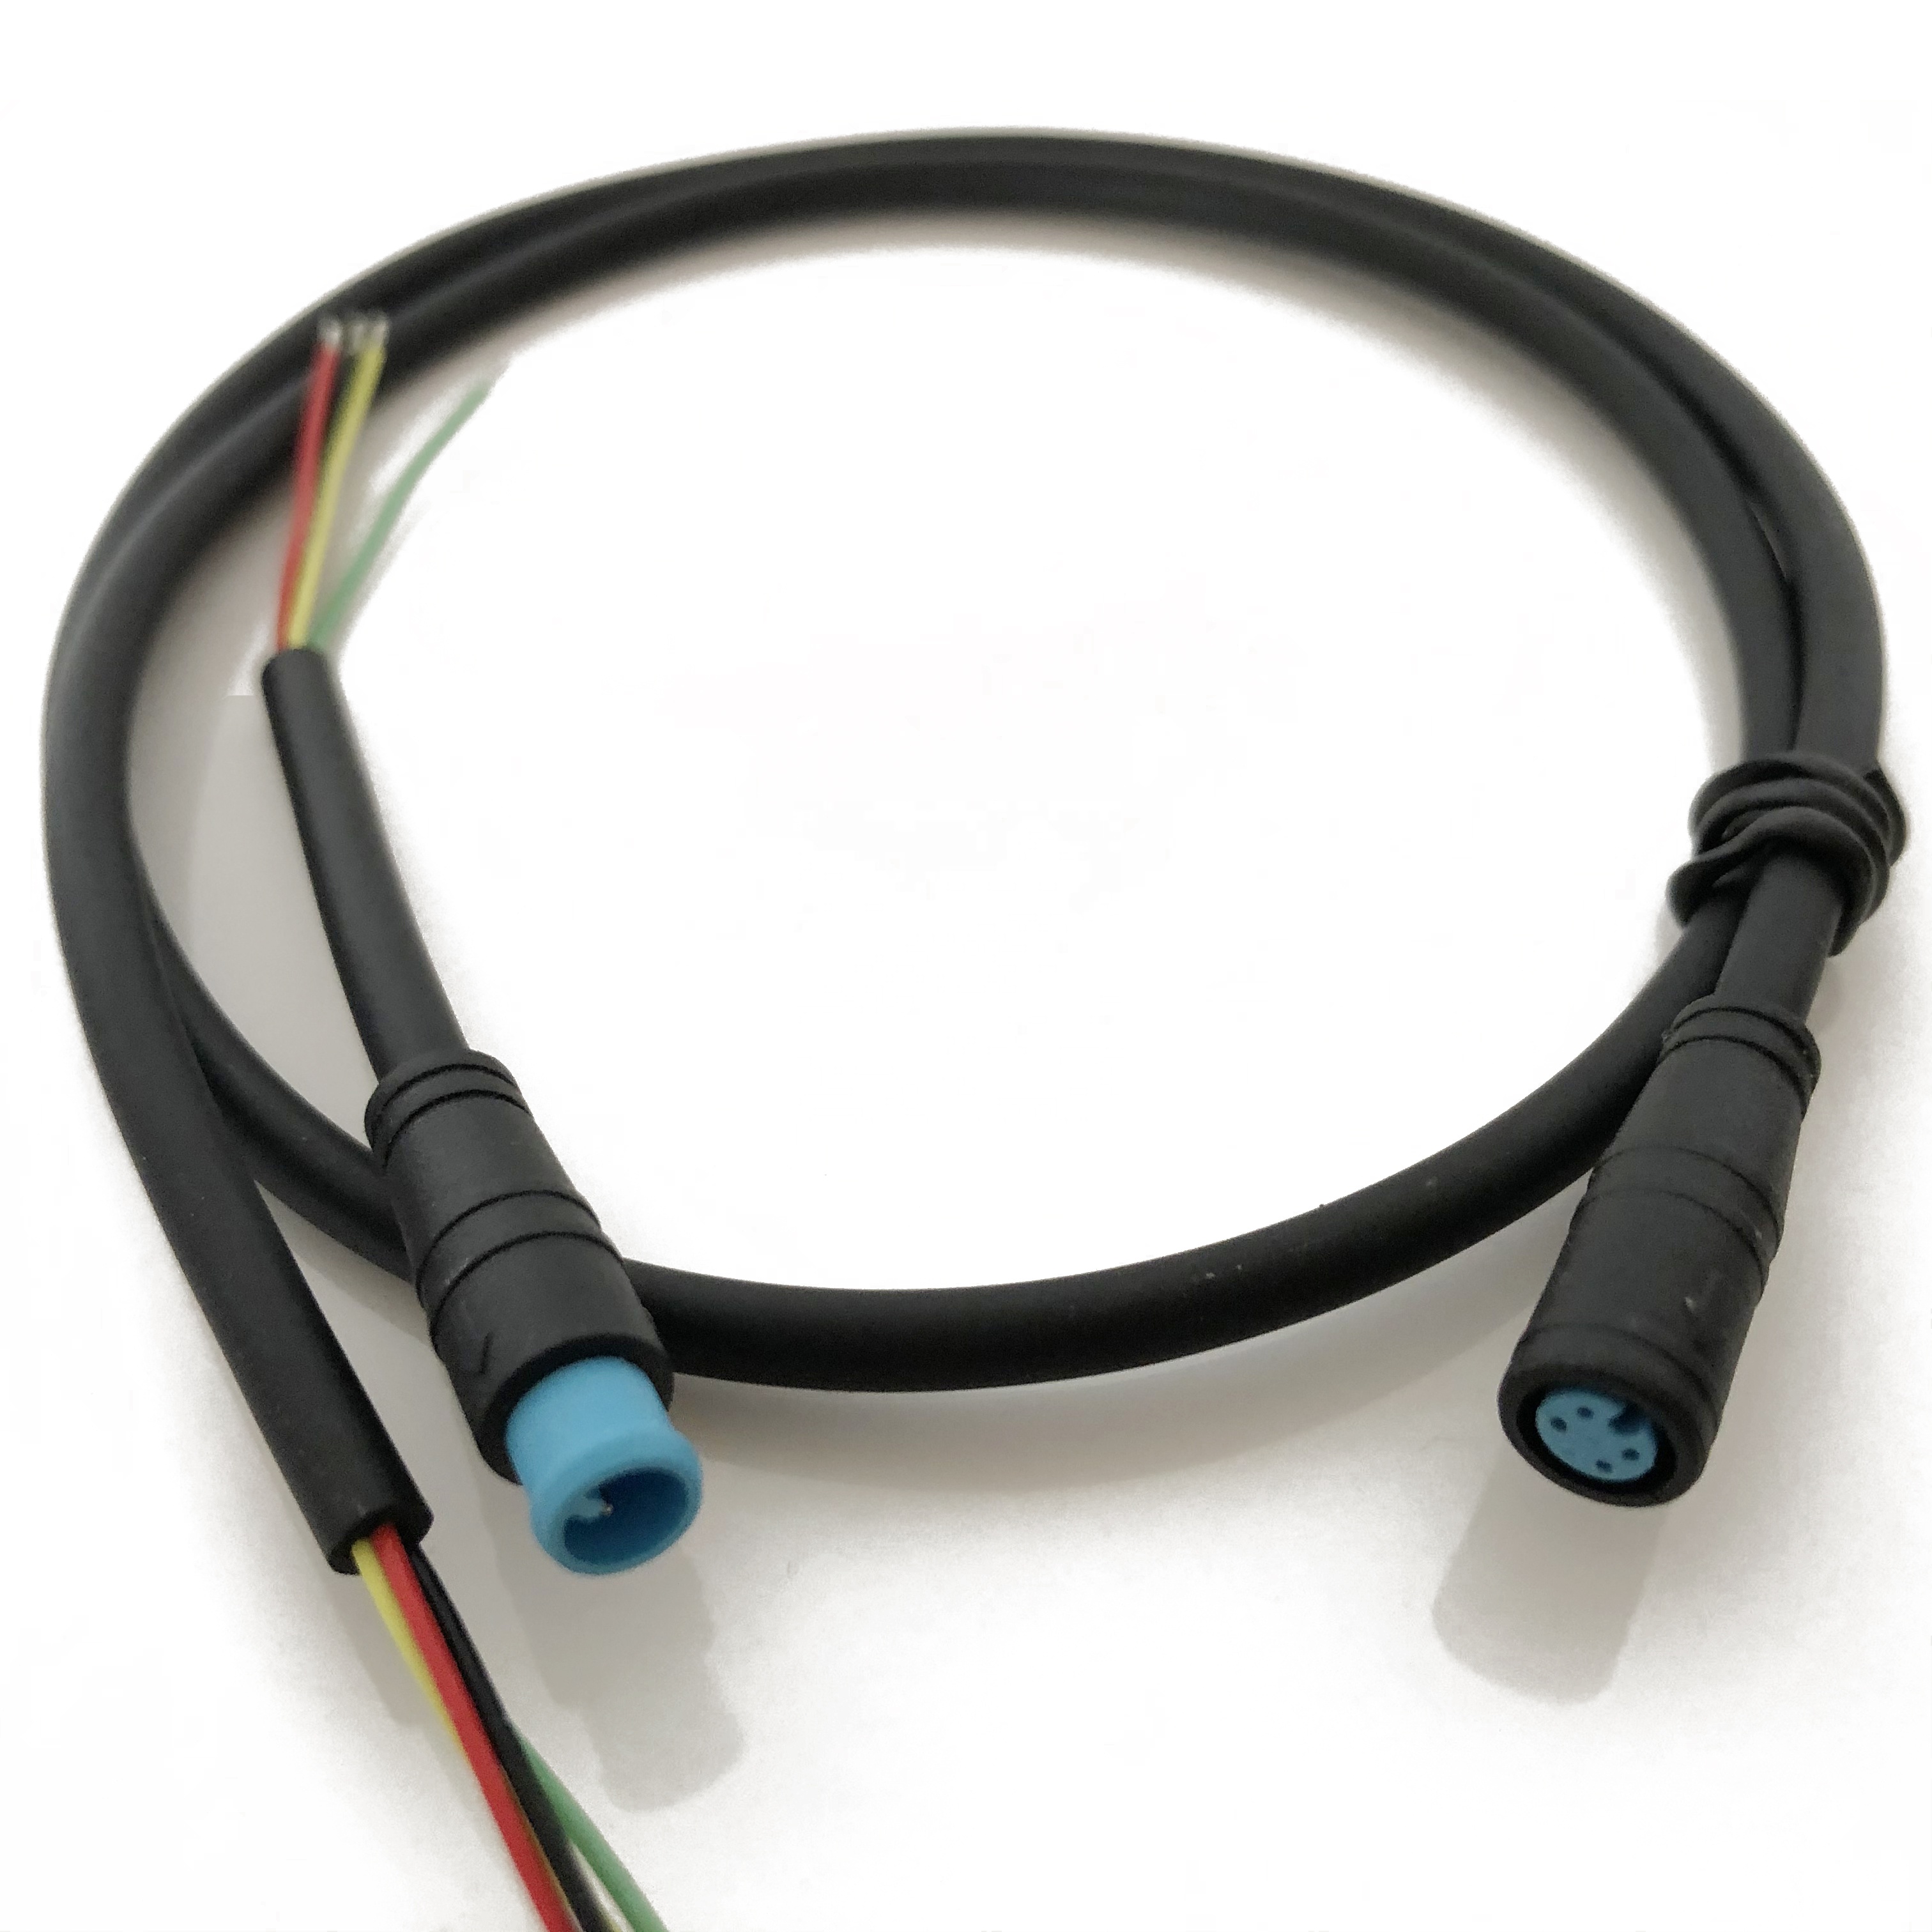 M8 5 Pin IP65 männlich -bis weibliches Verlängerungskabel für Elektrofahrrad für wasserdichte Kabel -Ebike -Fahrradanzeige Kit